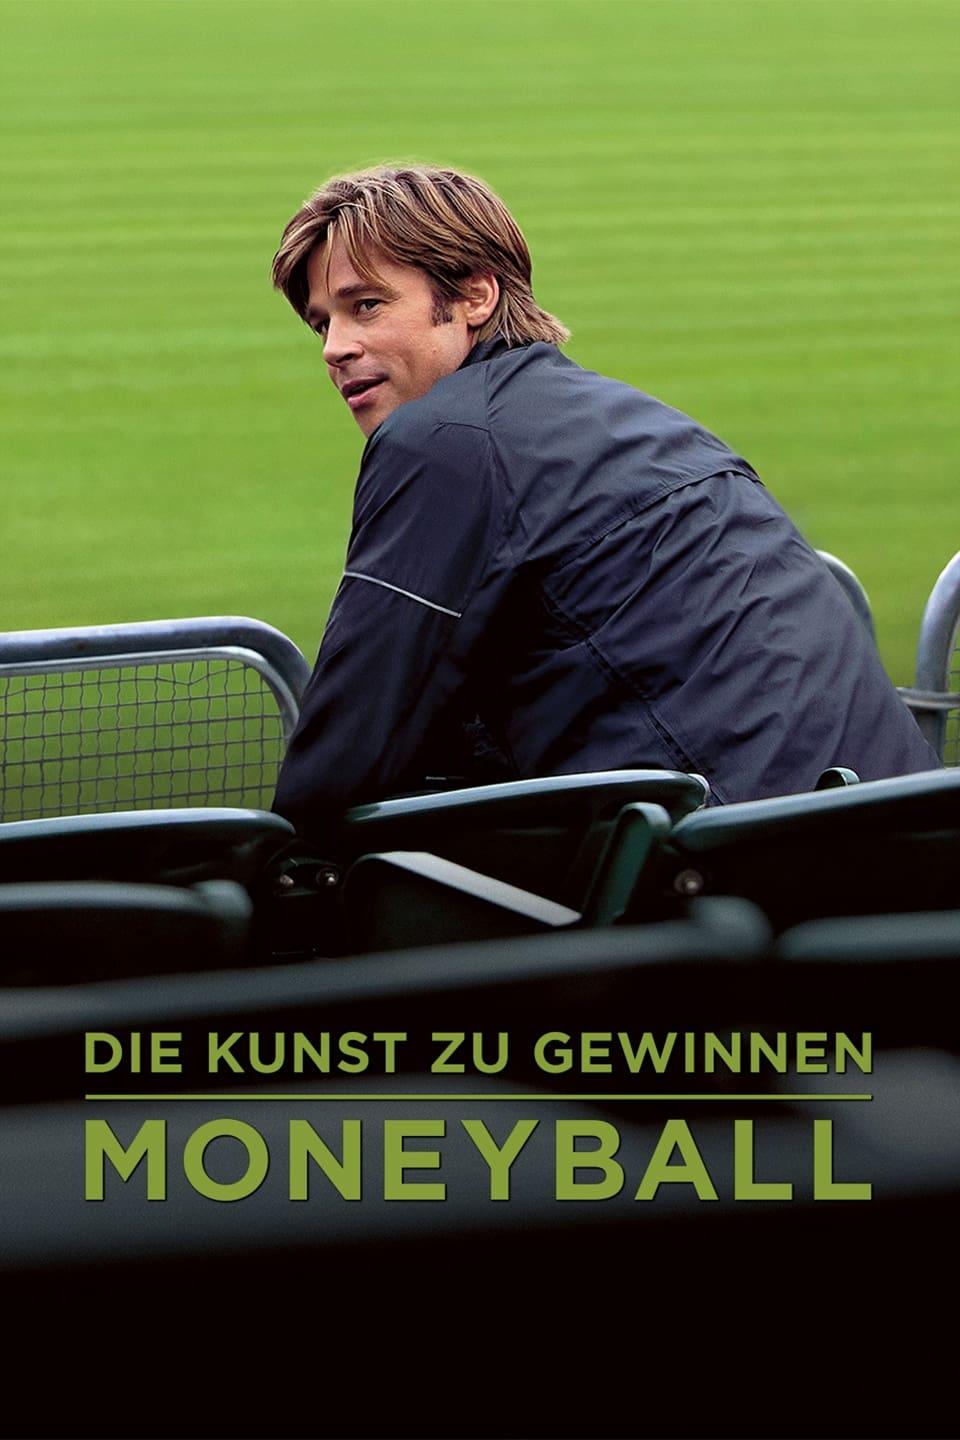 Die Kunst zu gewinnen - Moneyball poster